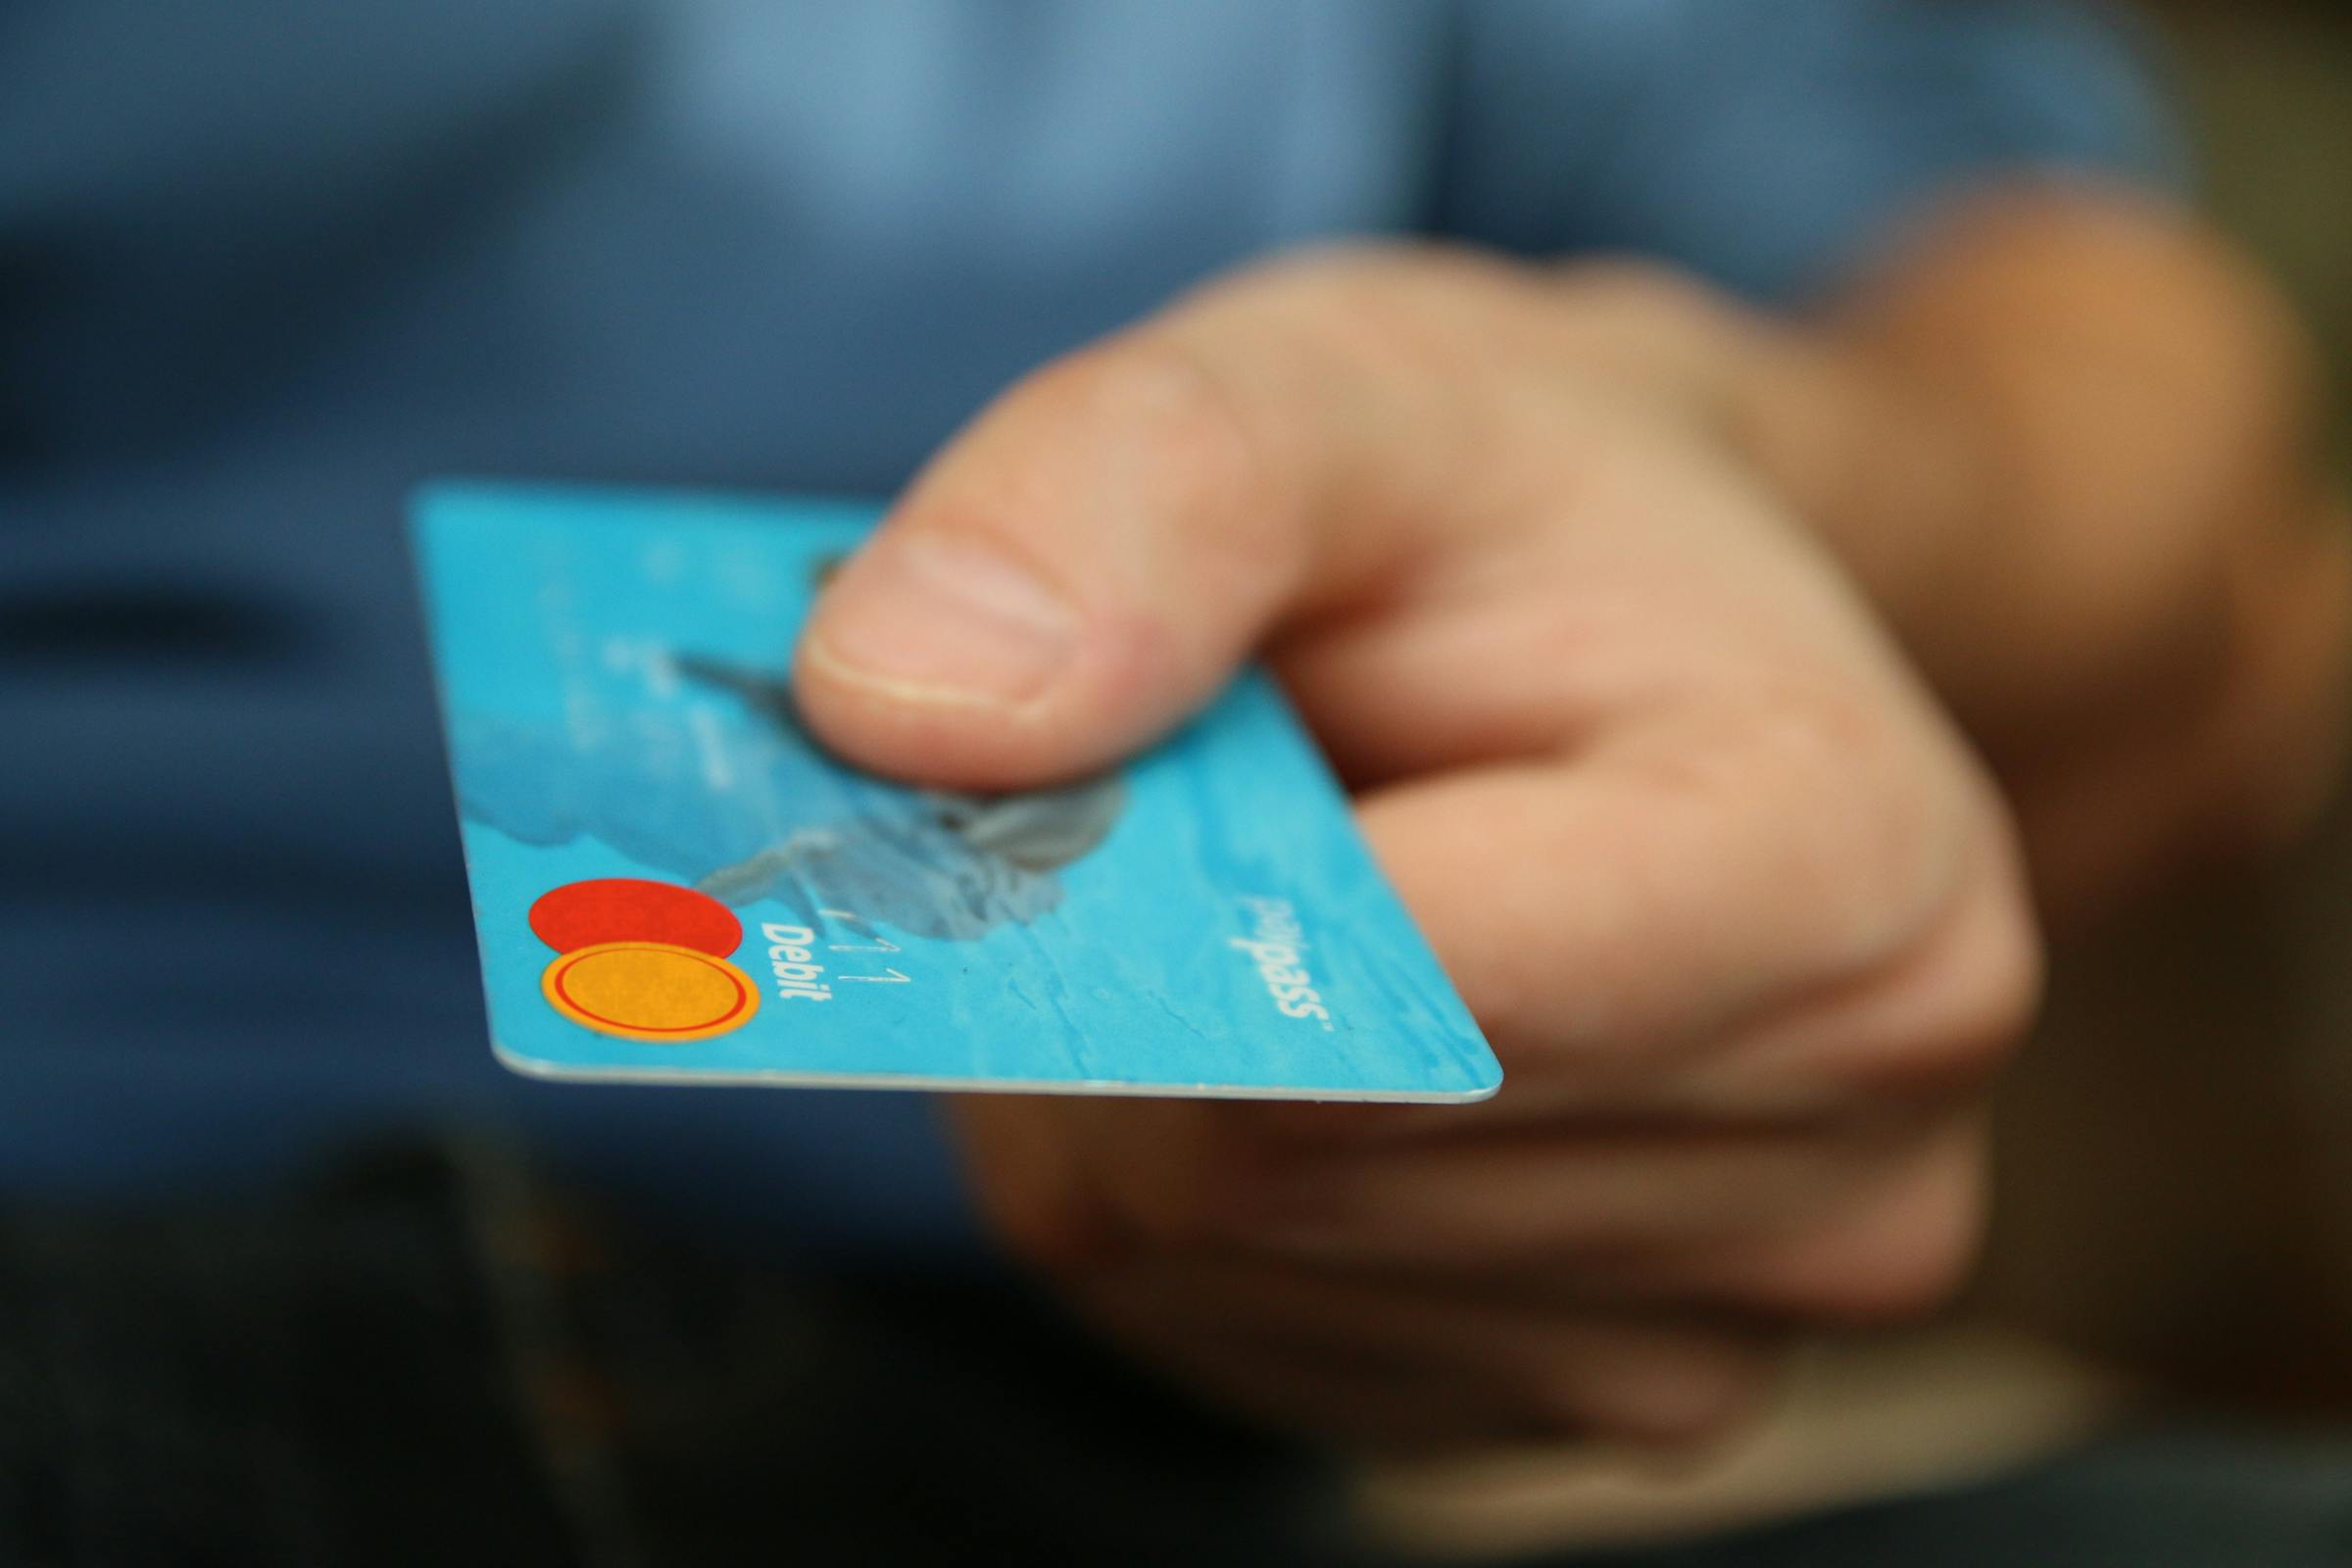 travel debit card money saving expert